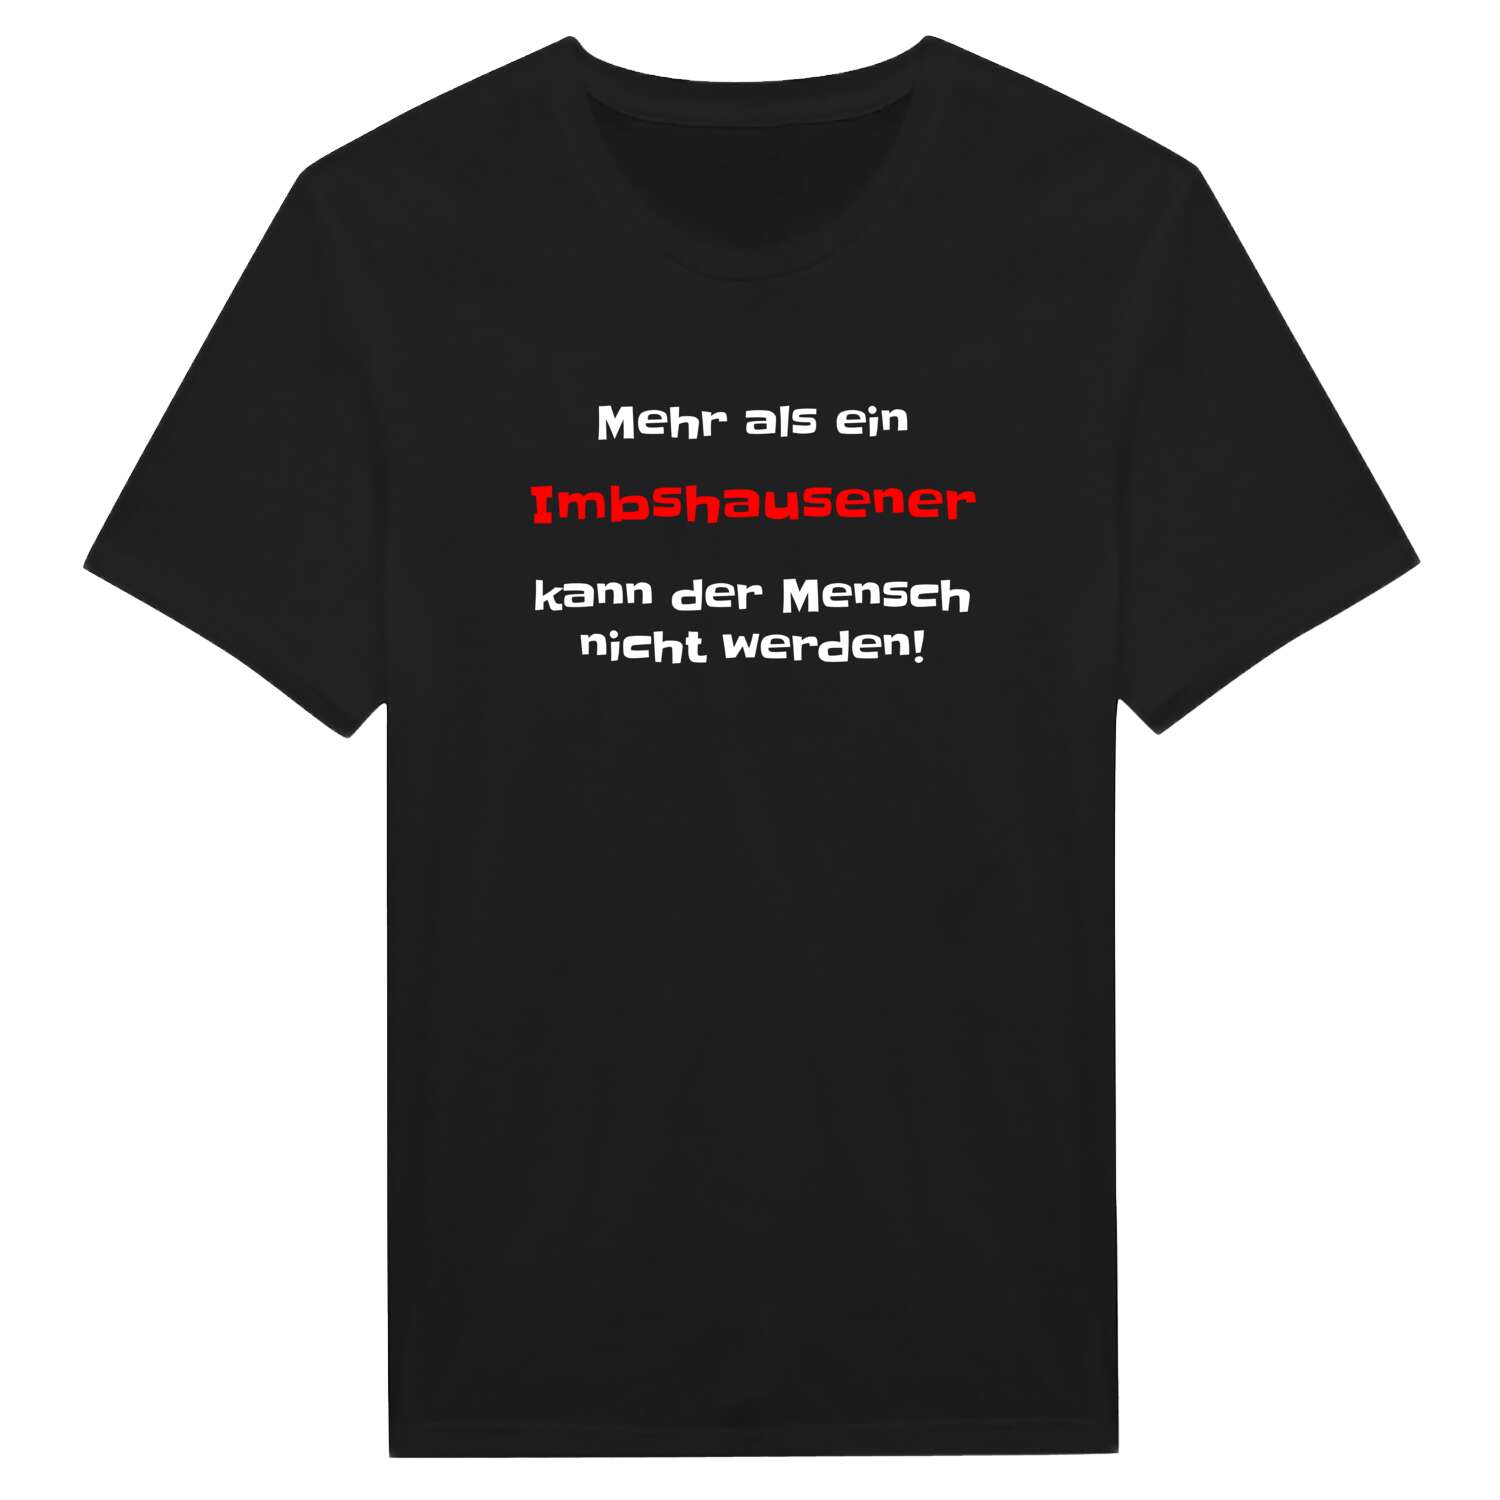 Imbshausen T-Shirt »Mehr als ein«